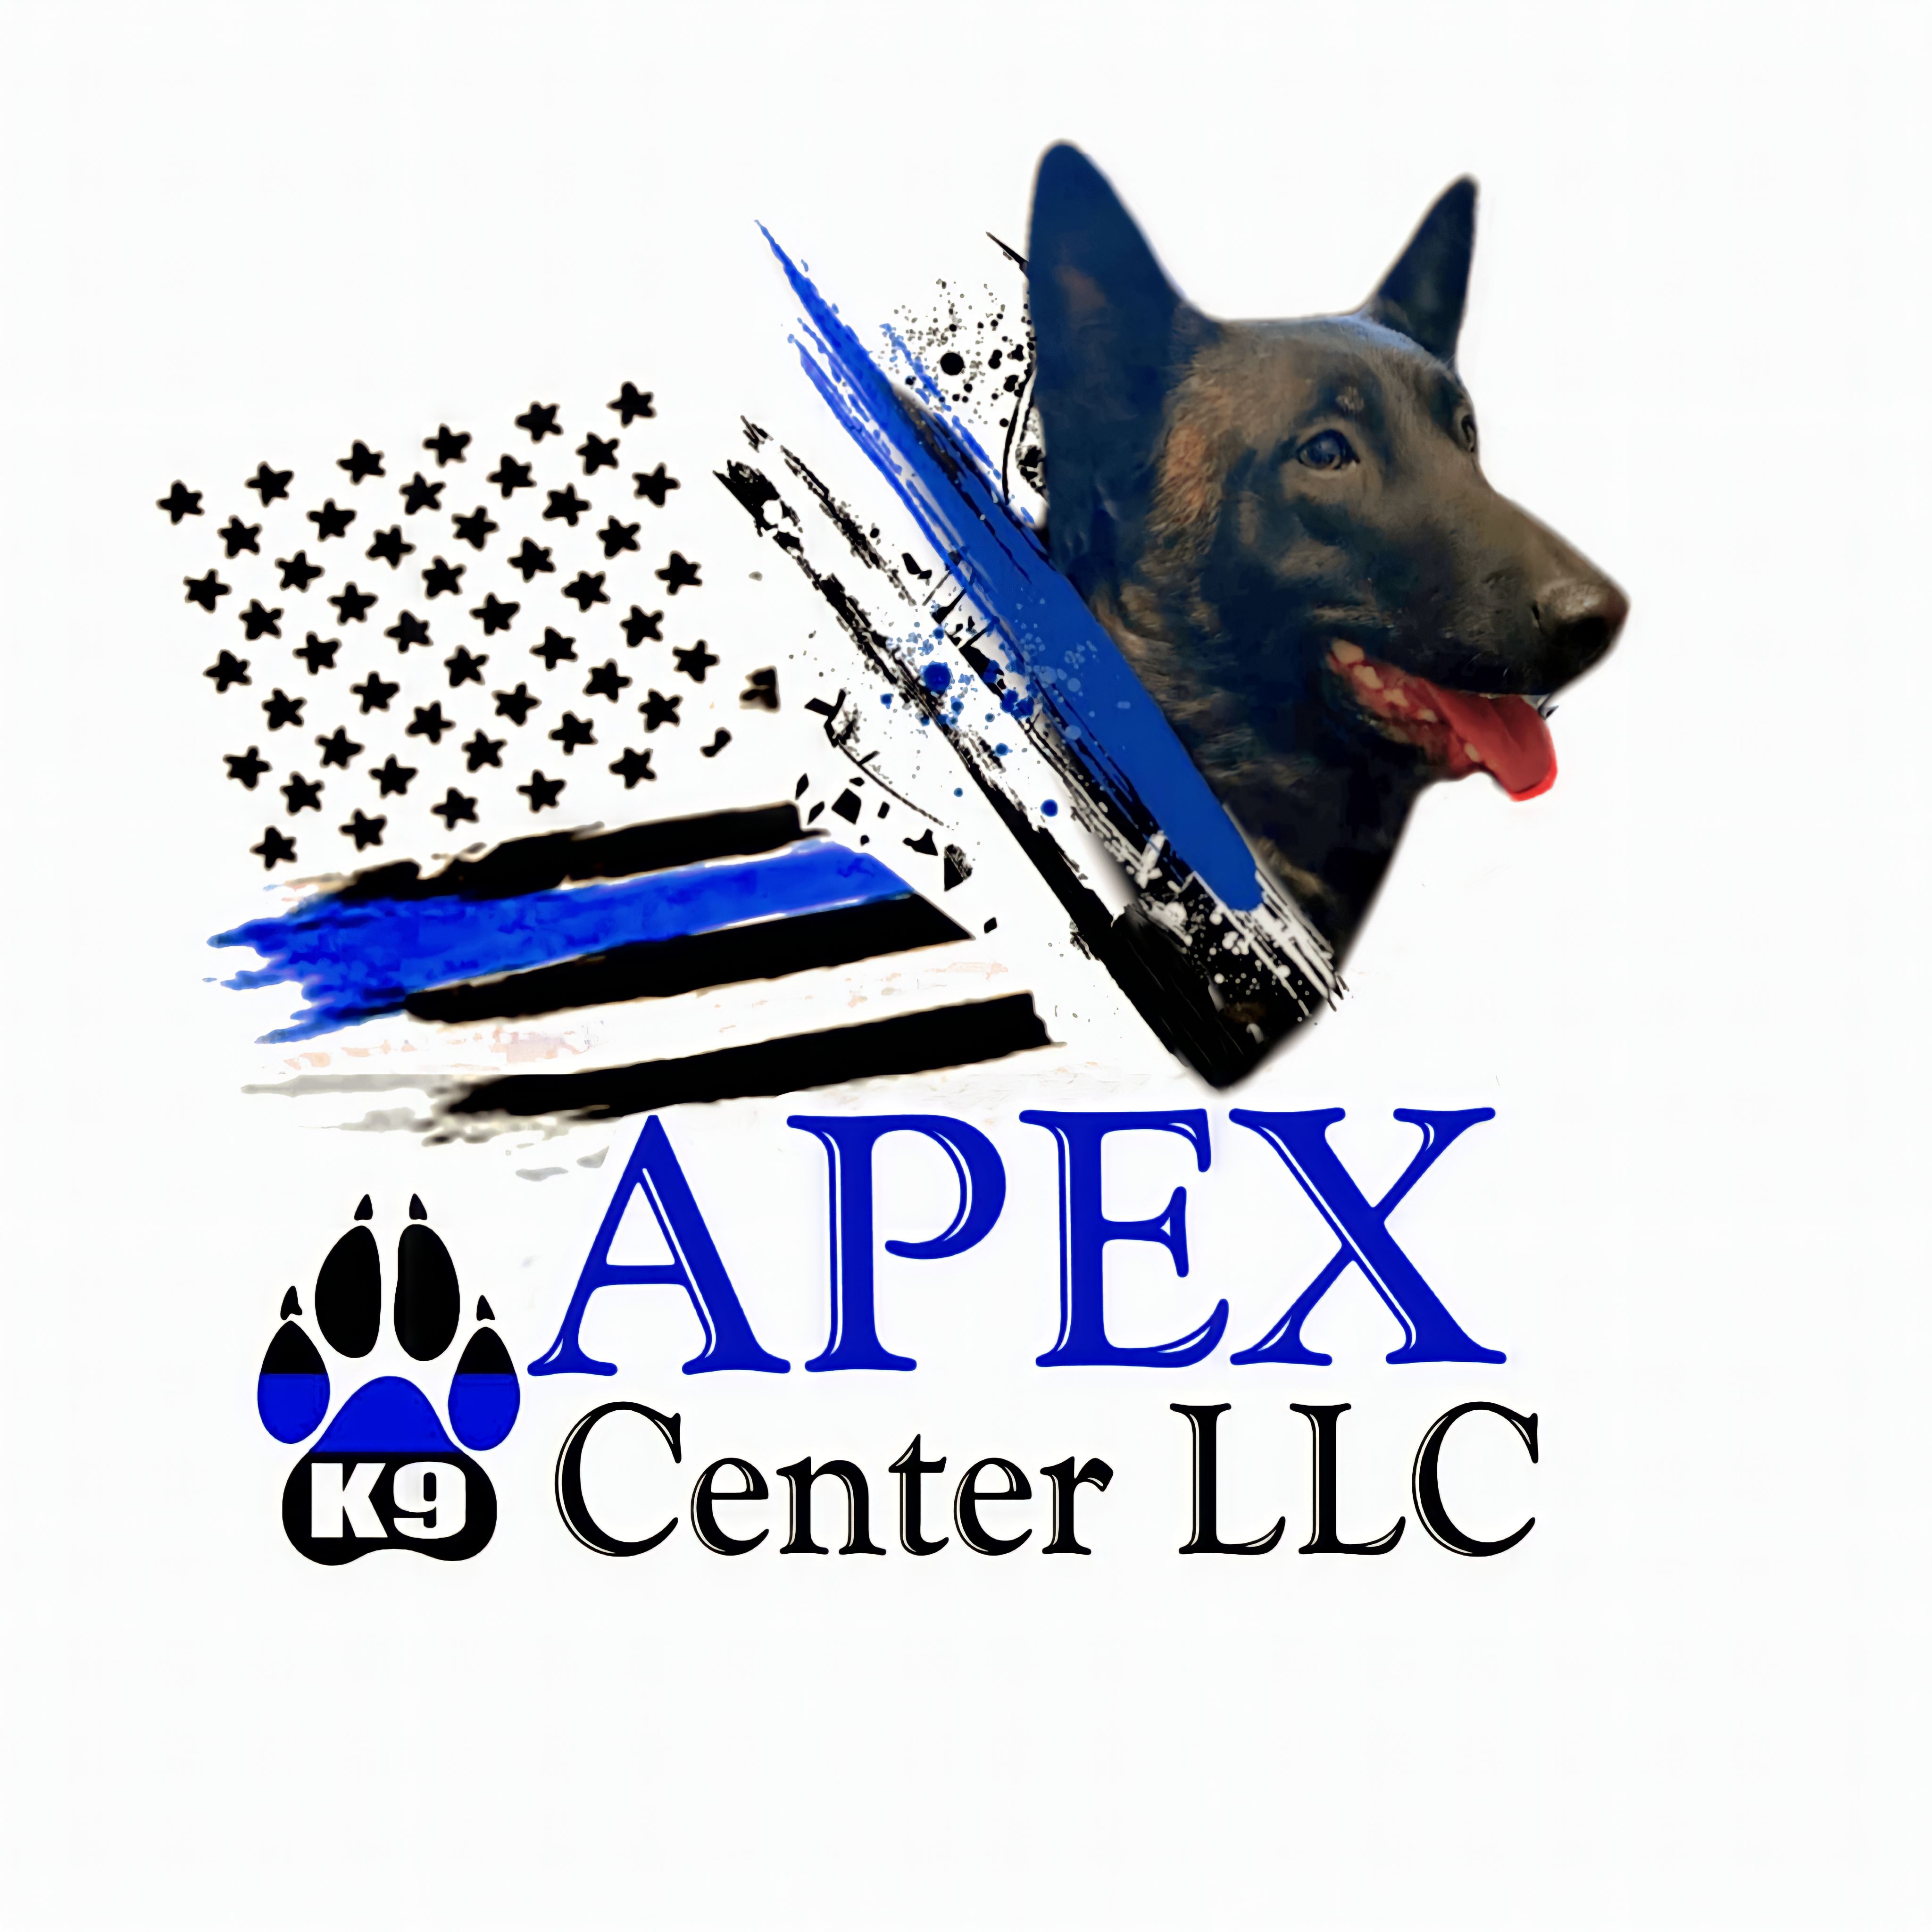 Apex K9 Center